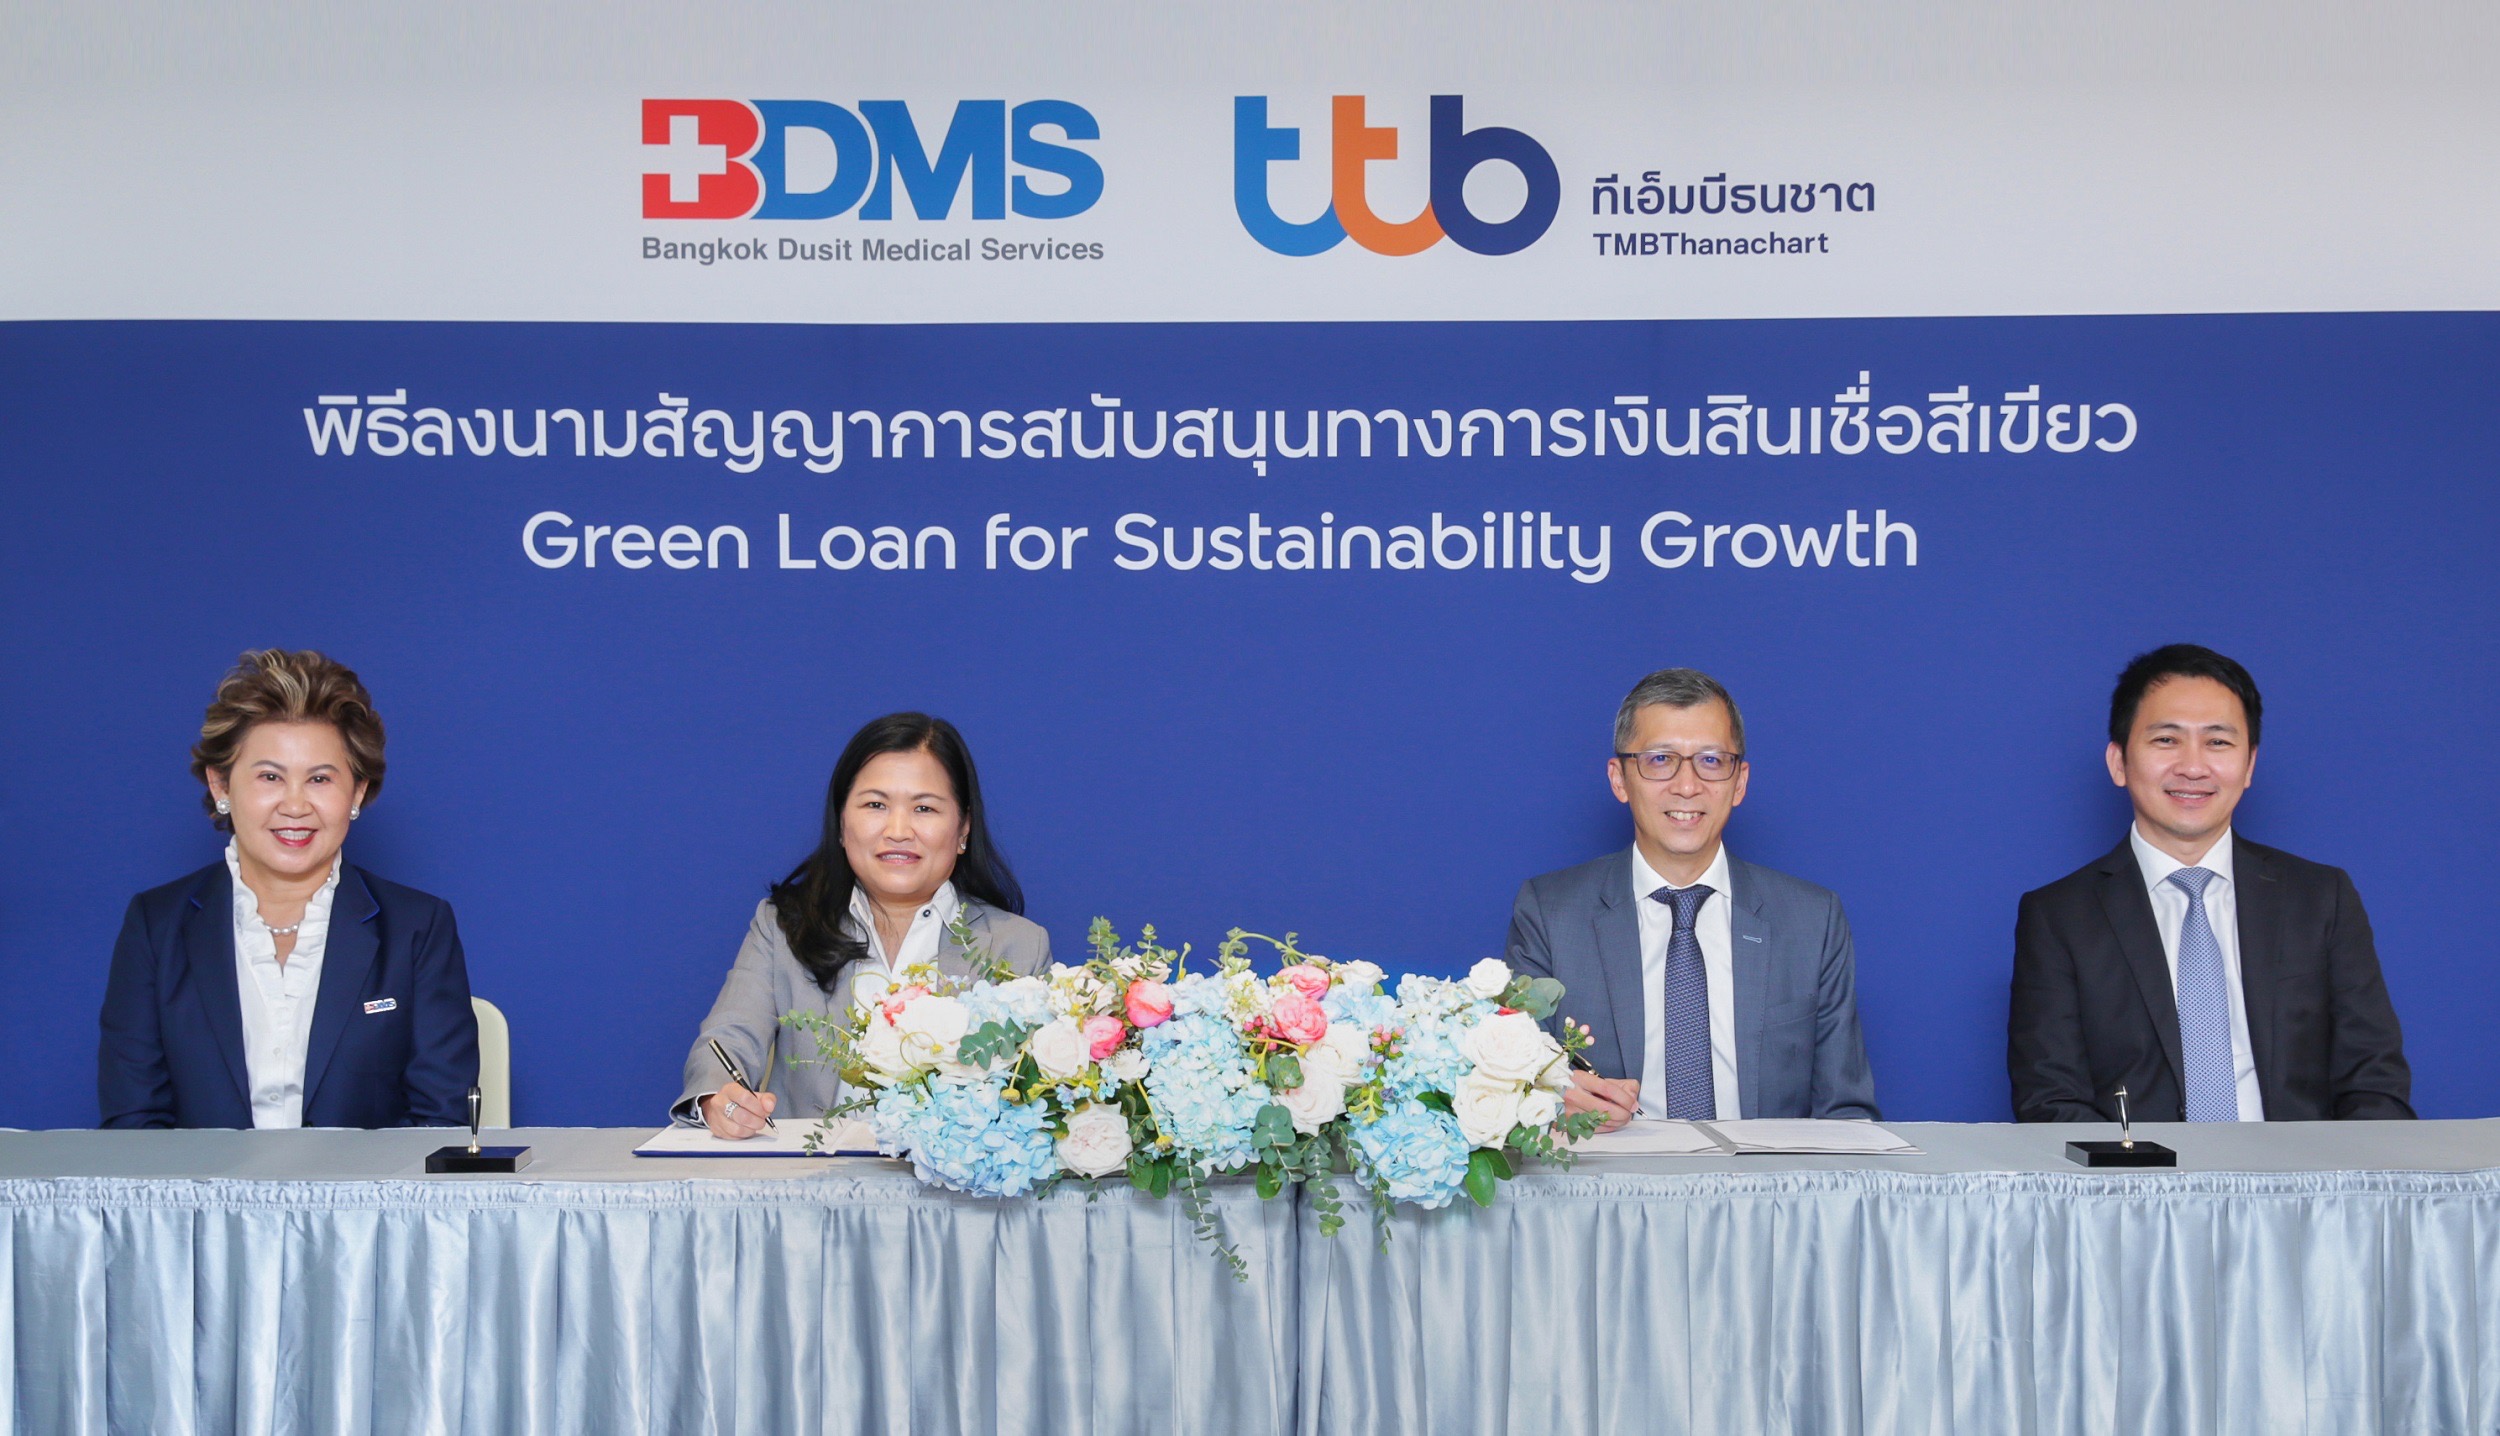 BDMS ผนึกttb หนุนโครงการสีเขียวที่เป็นมิตรต่อสิ่งแวดล้อมไทยที่ได้รับมาตรฐานระดับสากล